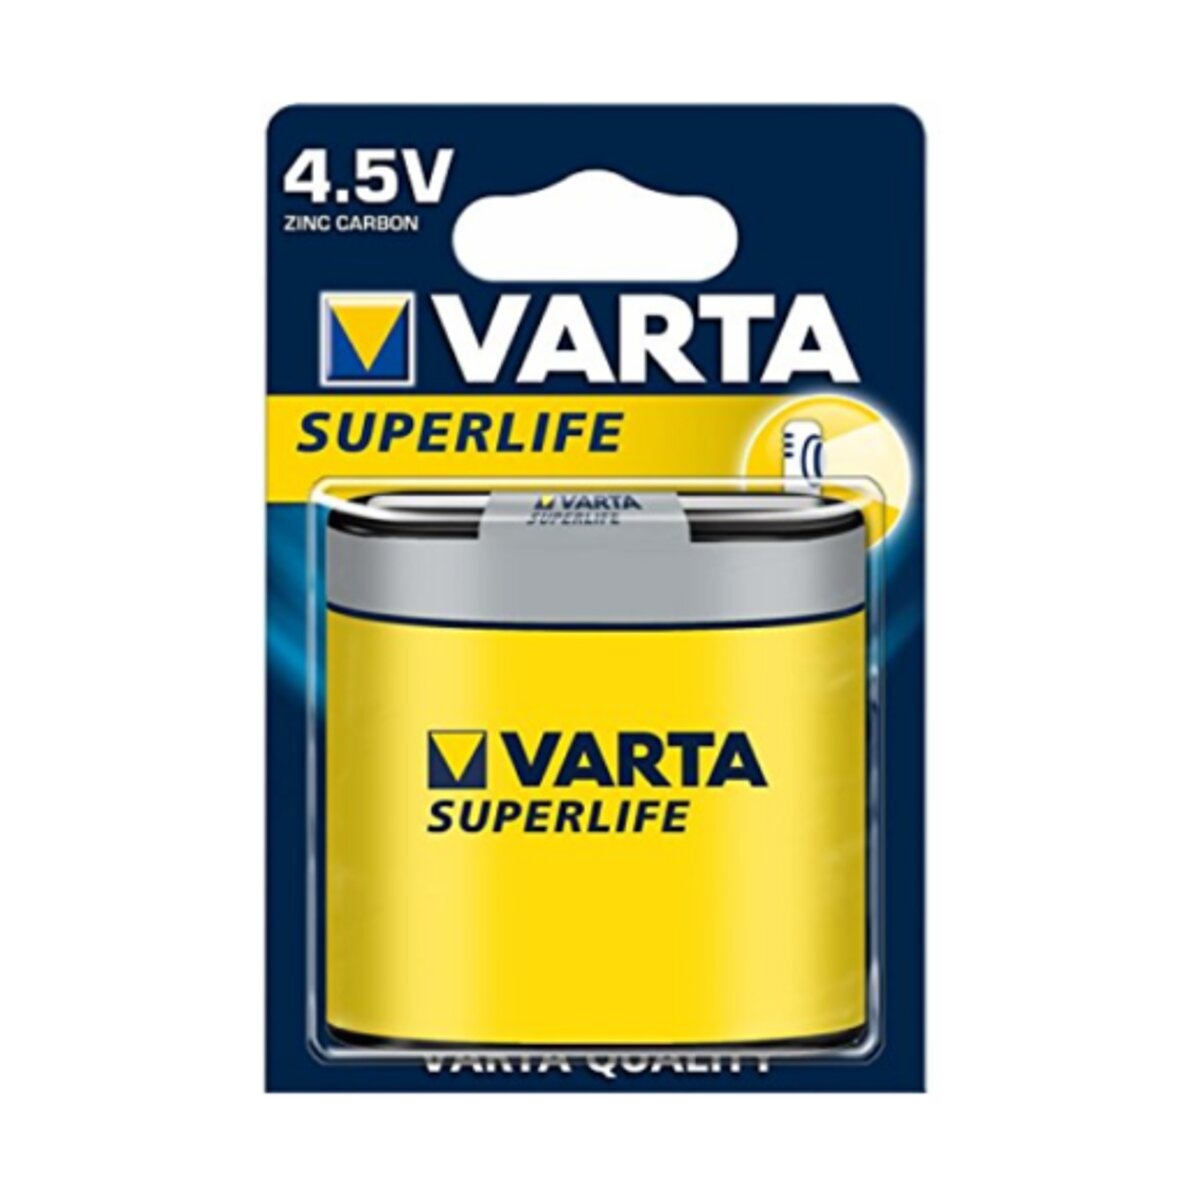 Varta Superlife Flachbatterie 2700 mAh 3R12 4,5V Typ 2012 im 1er Blis